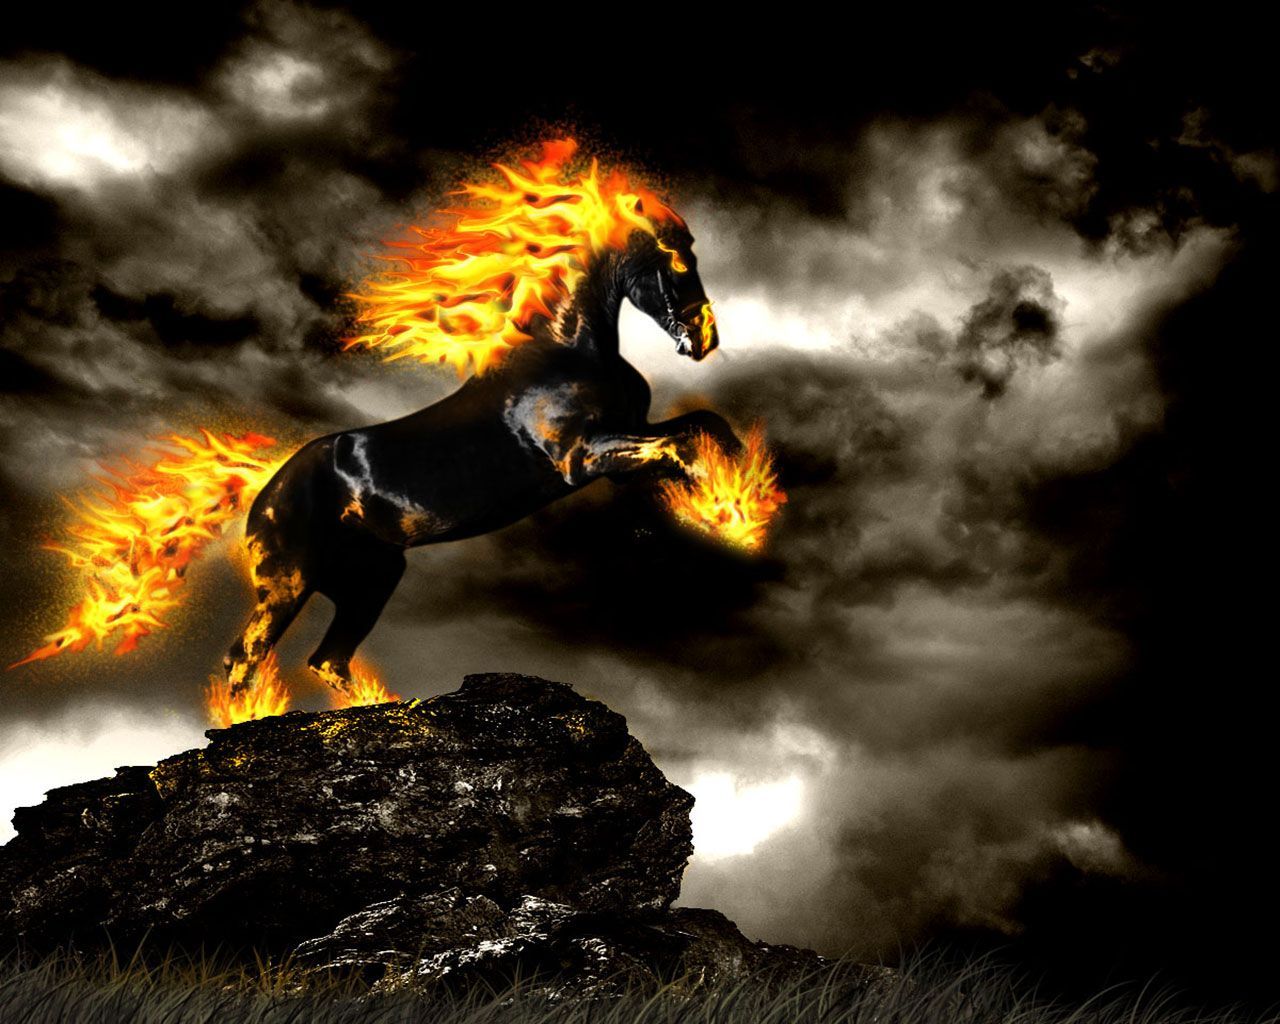 Horses Fire Free Wallpaper. Horse wallpaper, Fire horse, Fire art